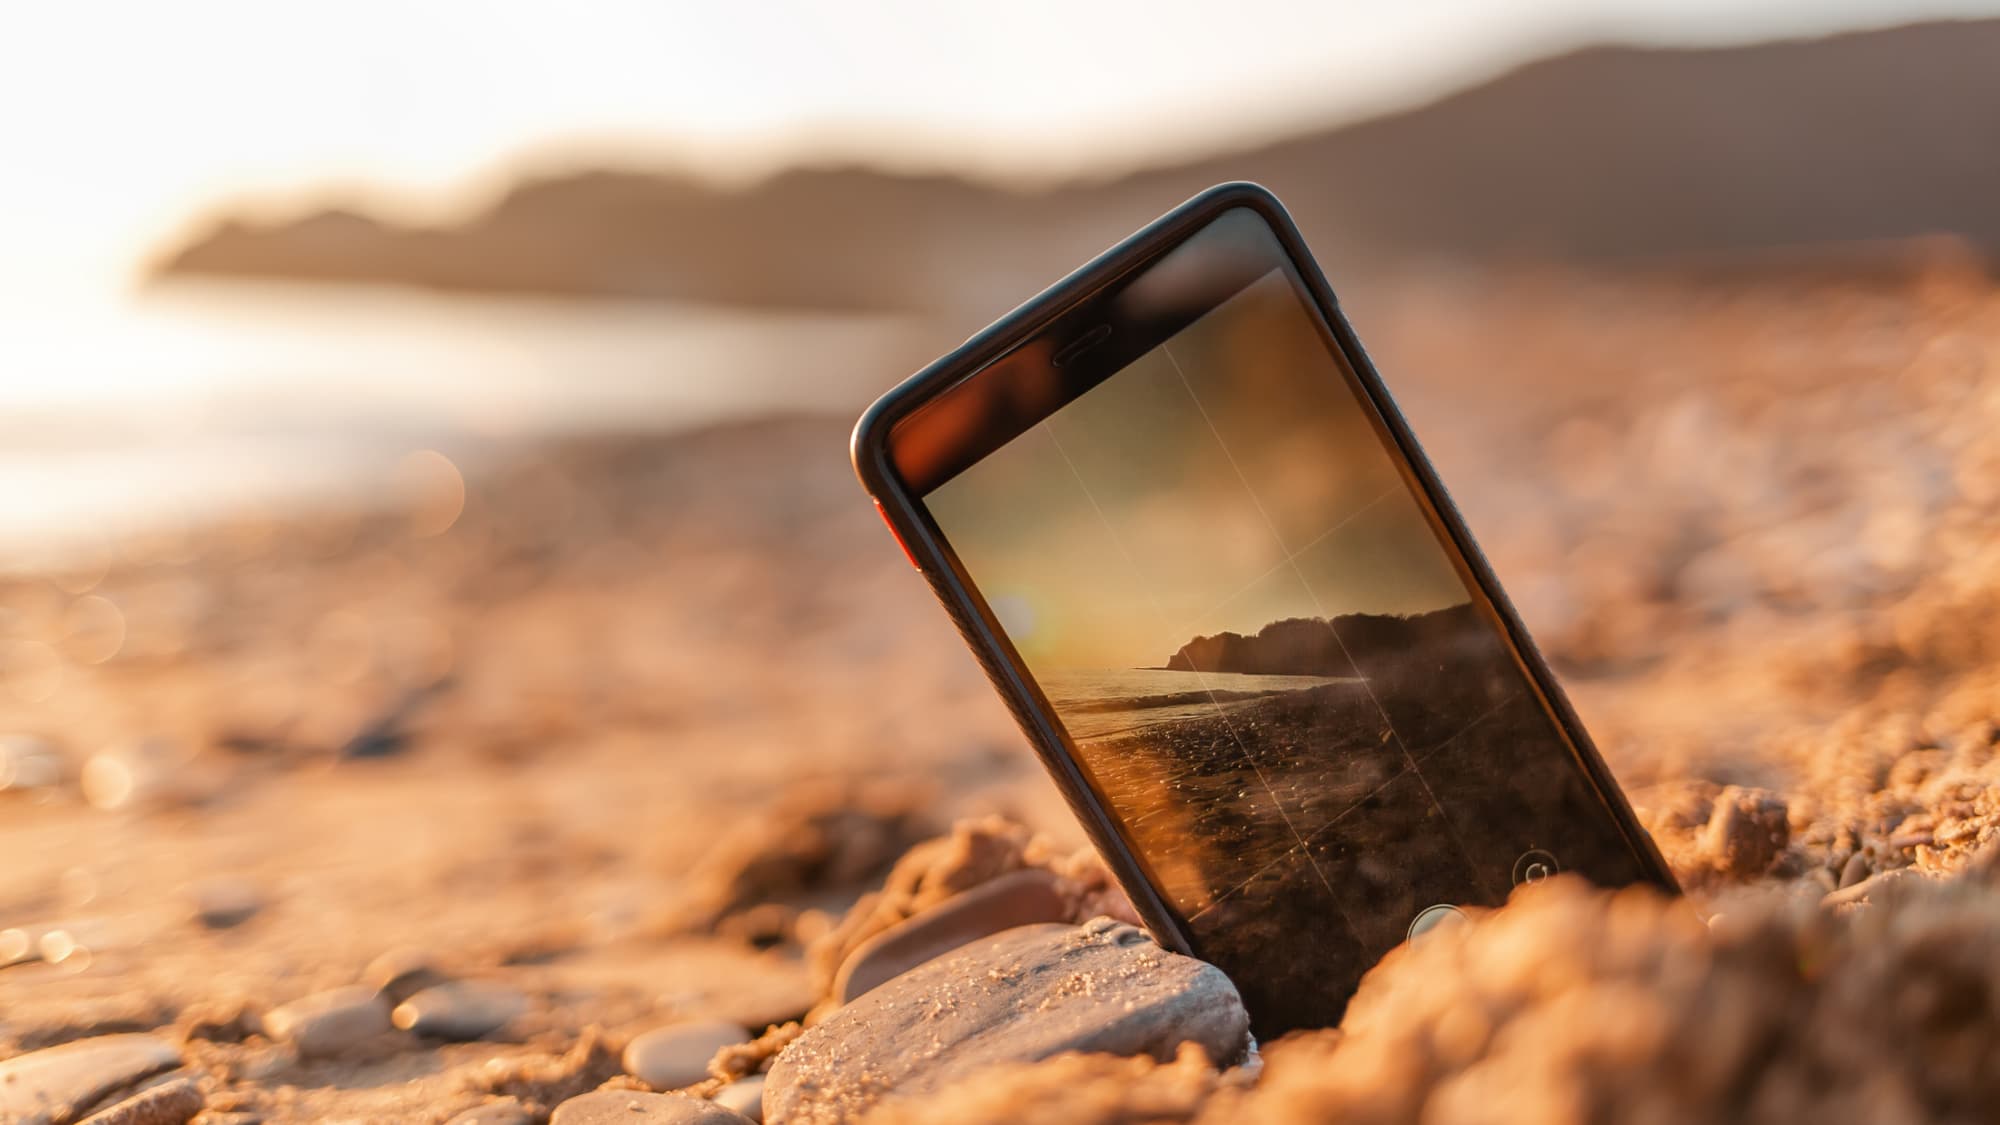 Été : sable, soleil, eau comment protéger son smartphone ?